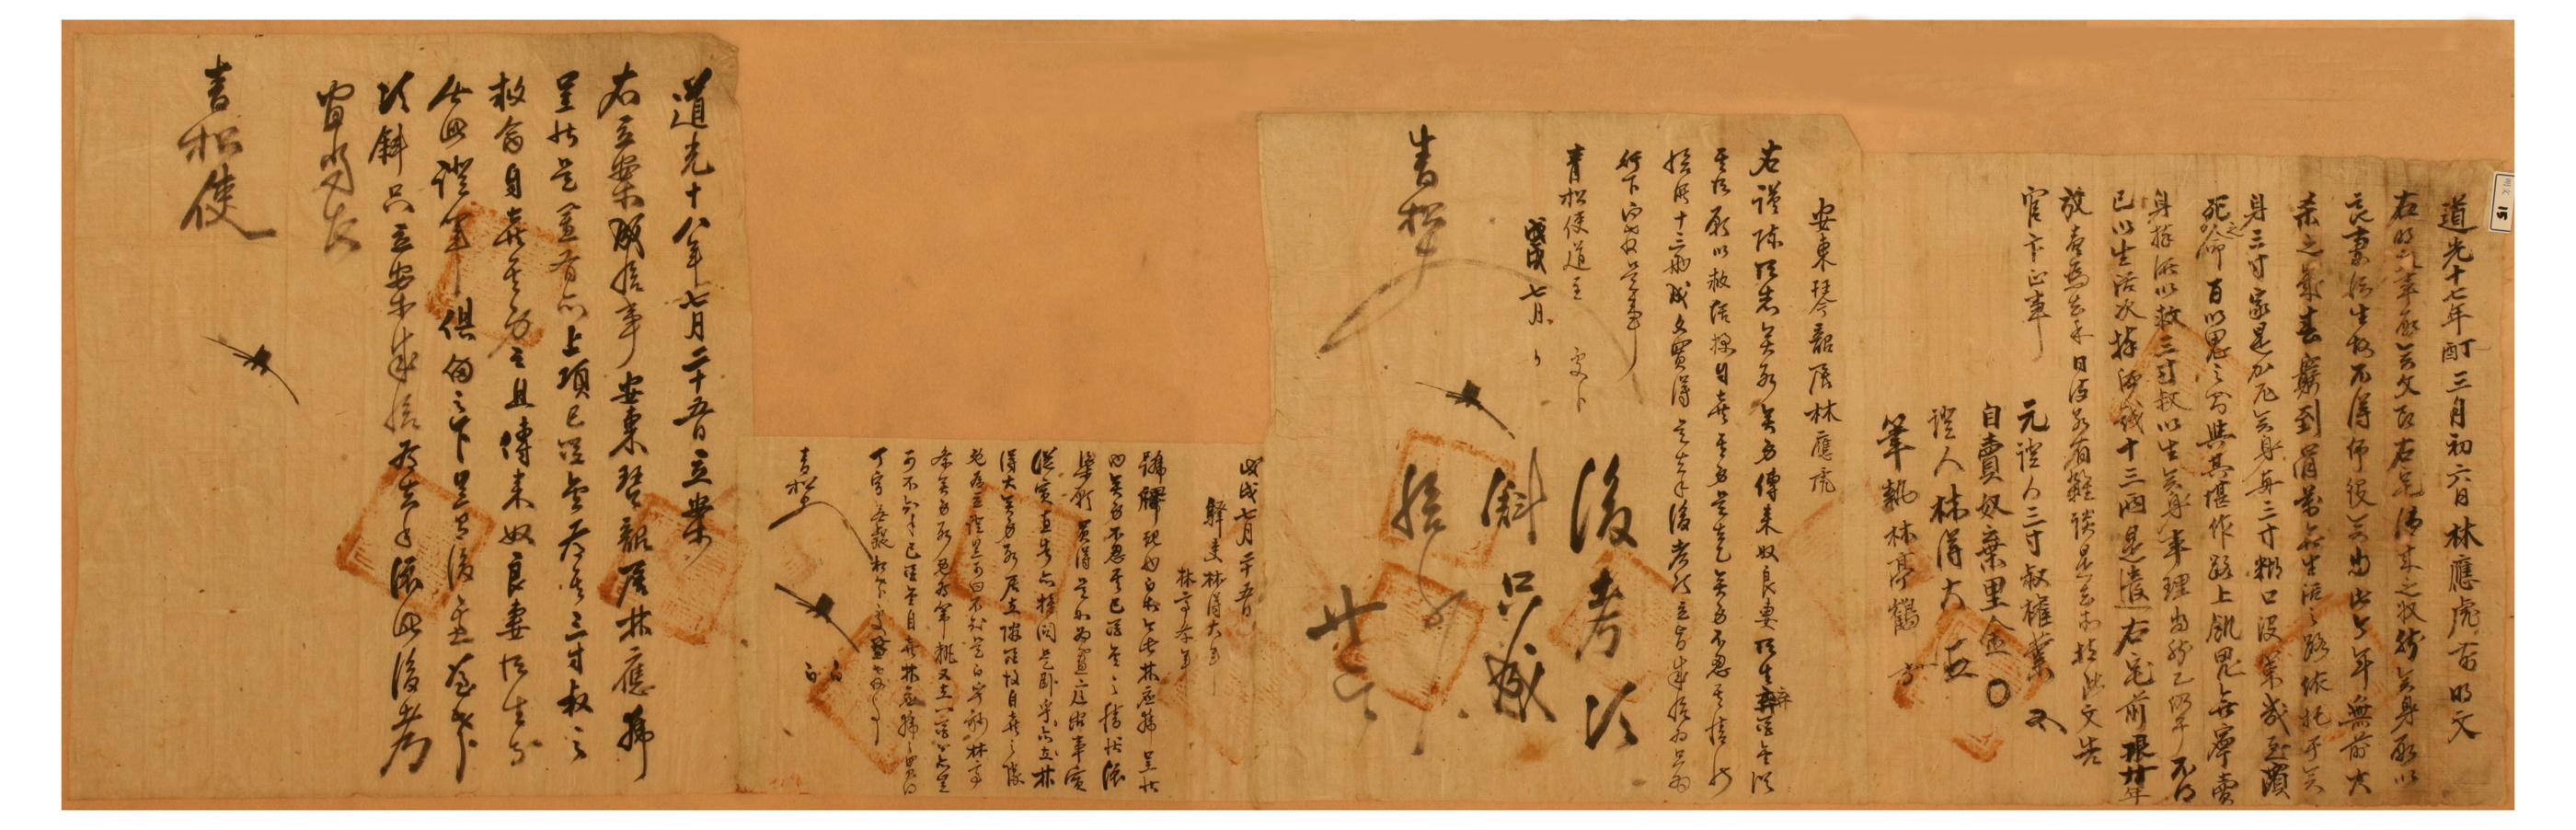 1746년에 김방이 작성한 시권의 명지